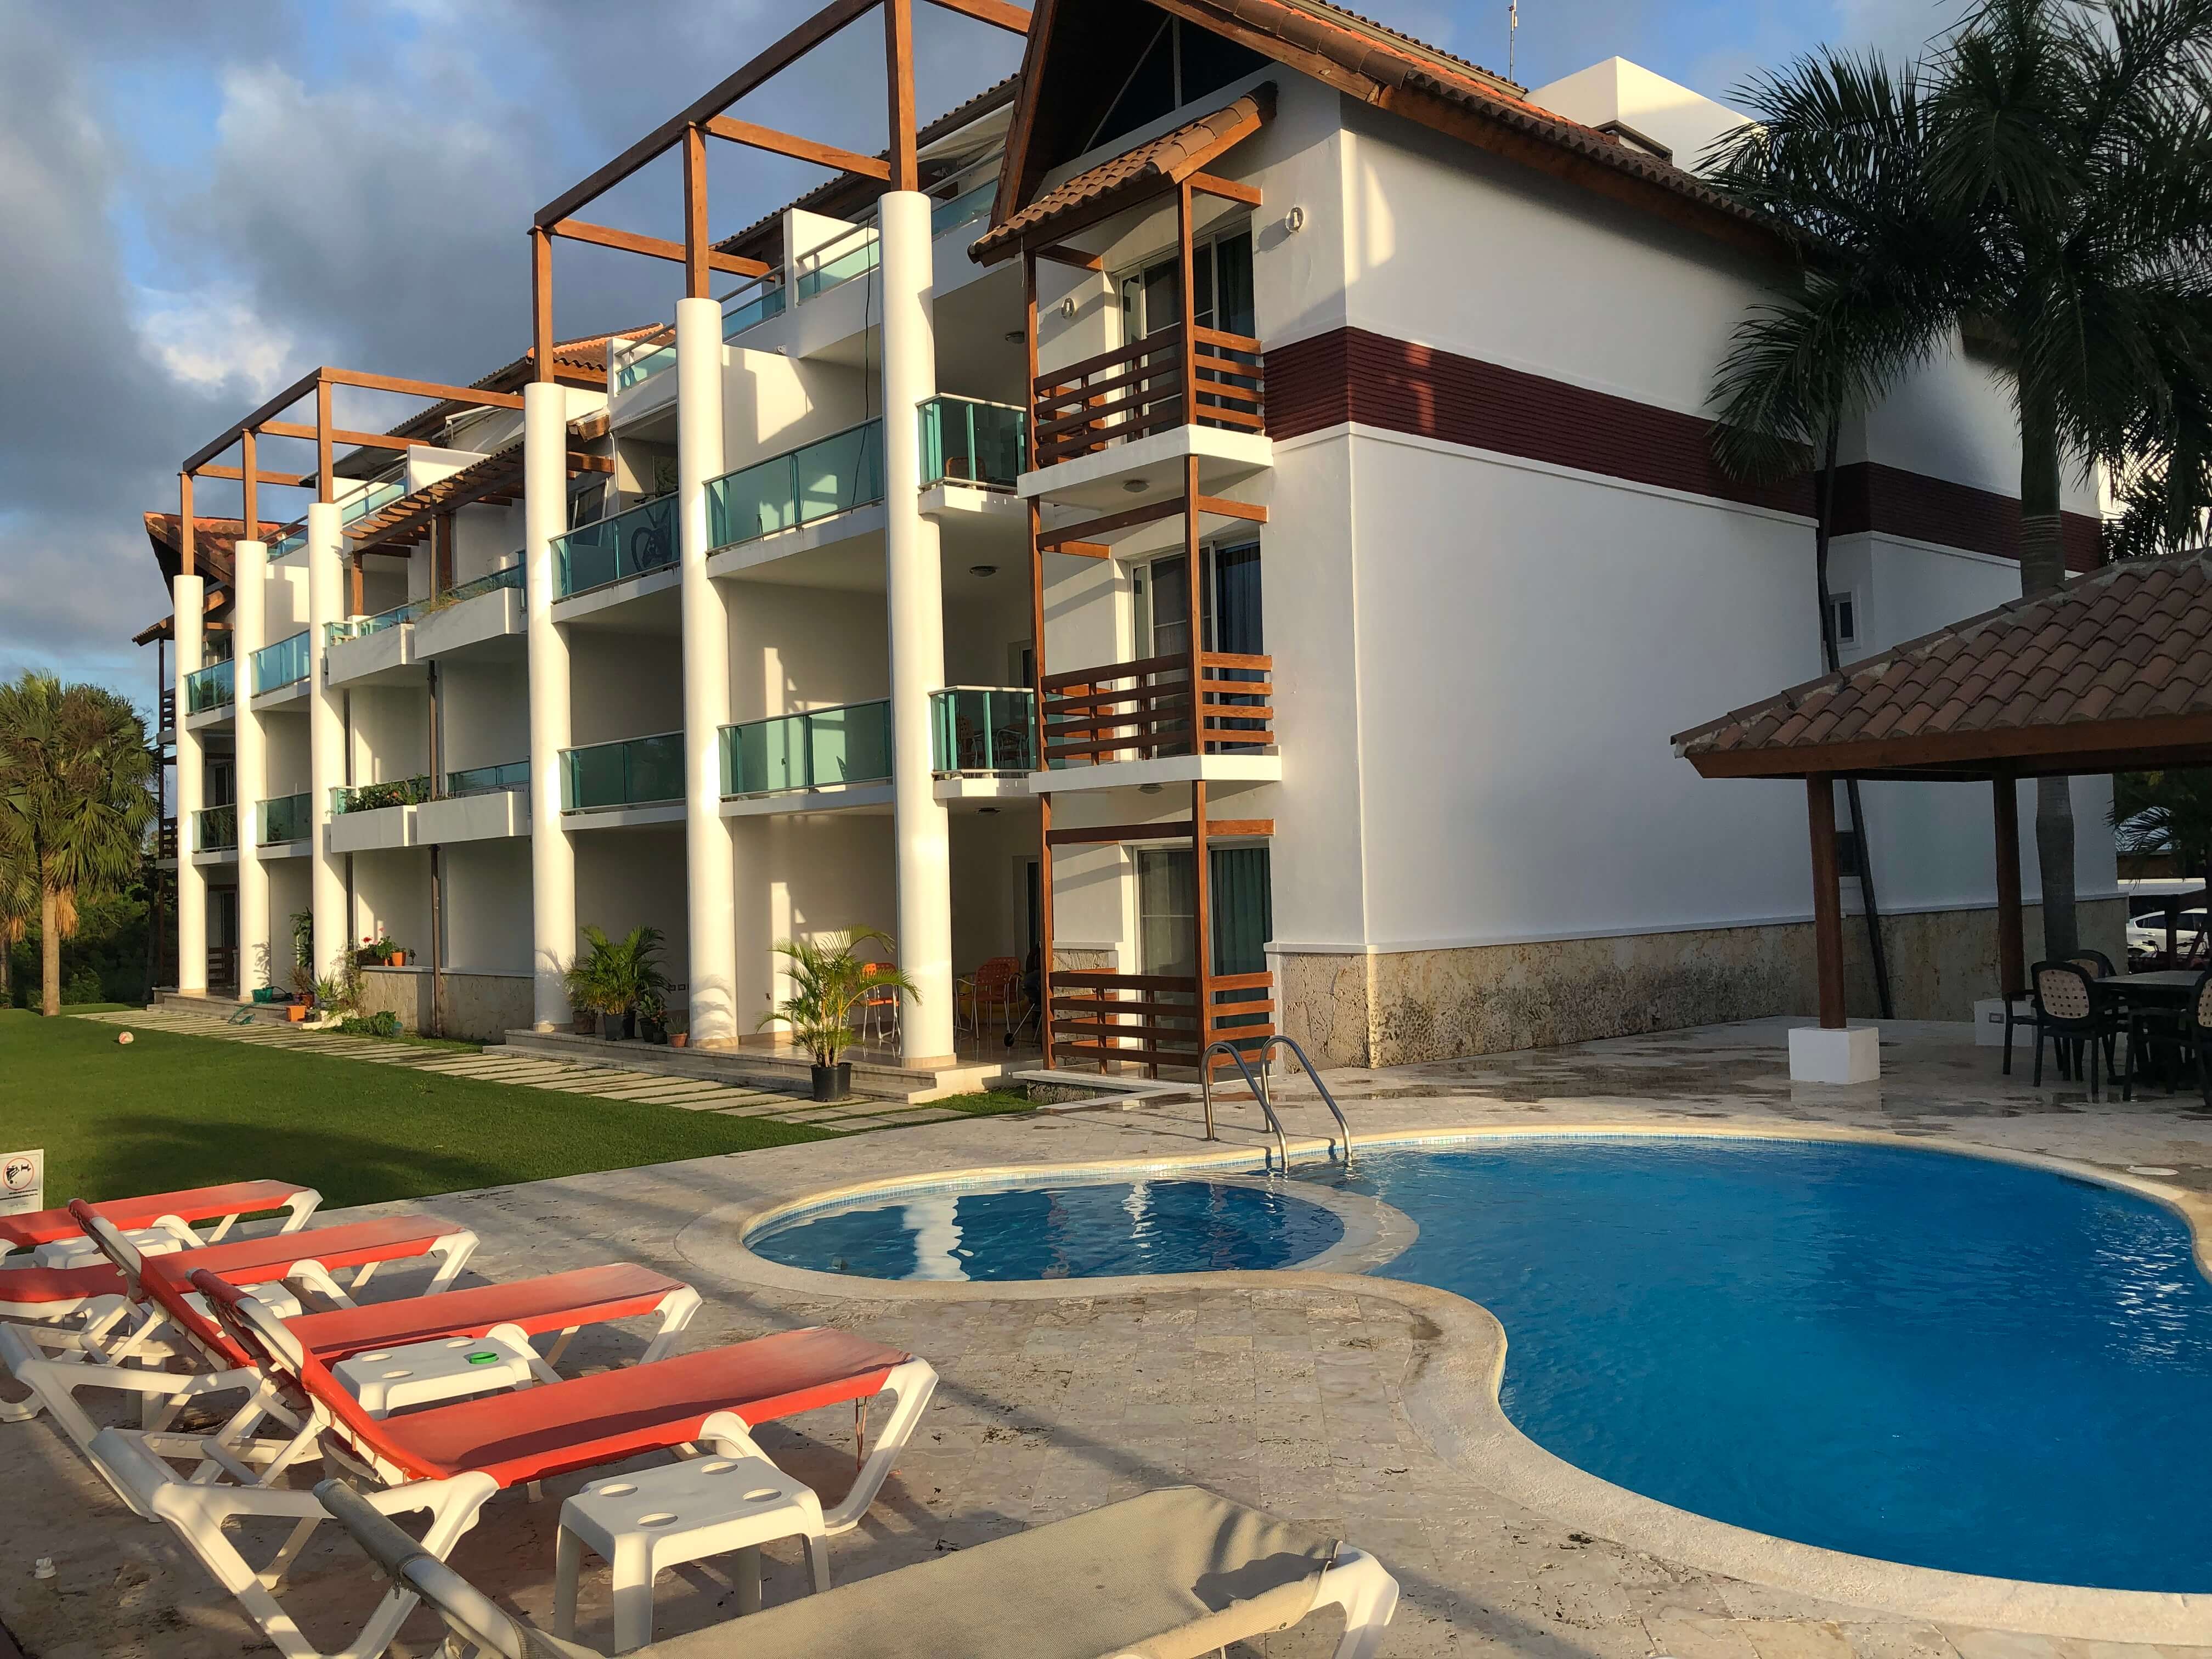 Великолепные Апартаменты 2-3 Спал. С Видом На Гольф Поле, В Нескольких Минутах От Пляжа. Баваро, Доминикана